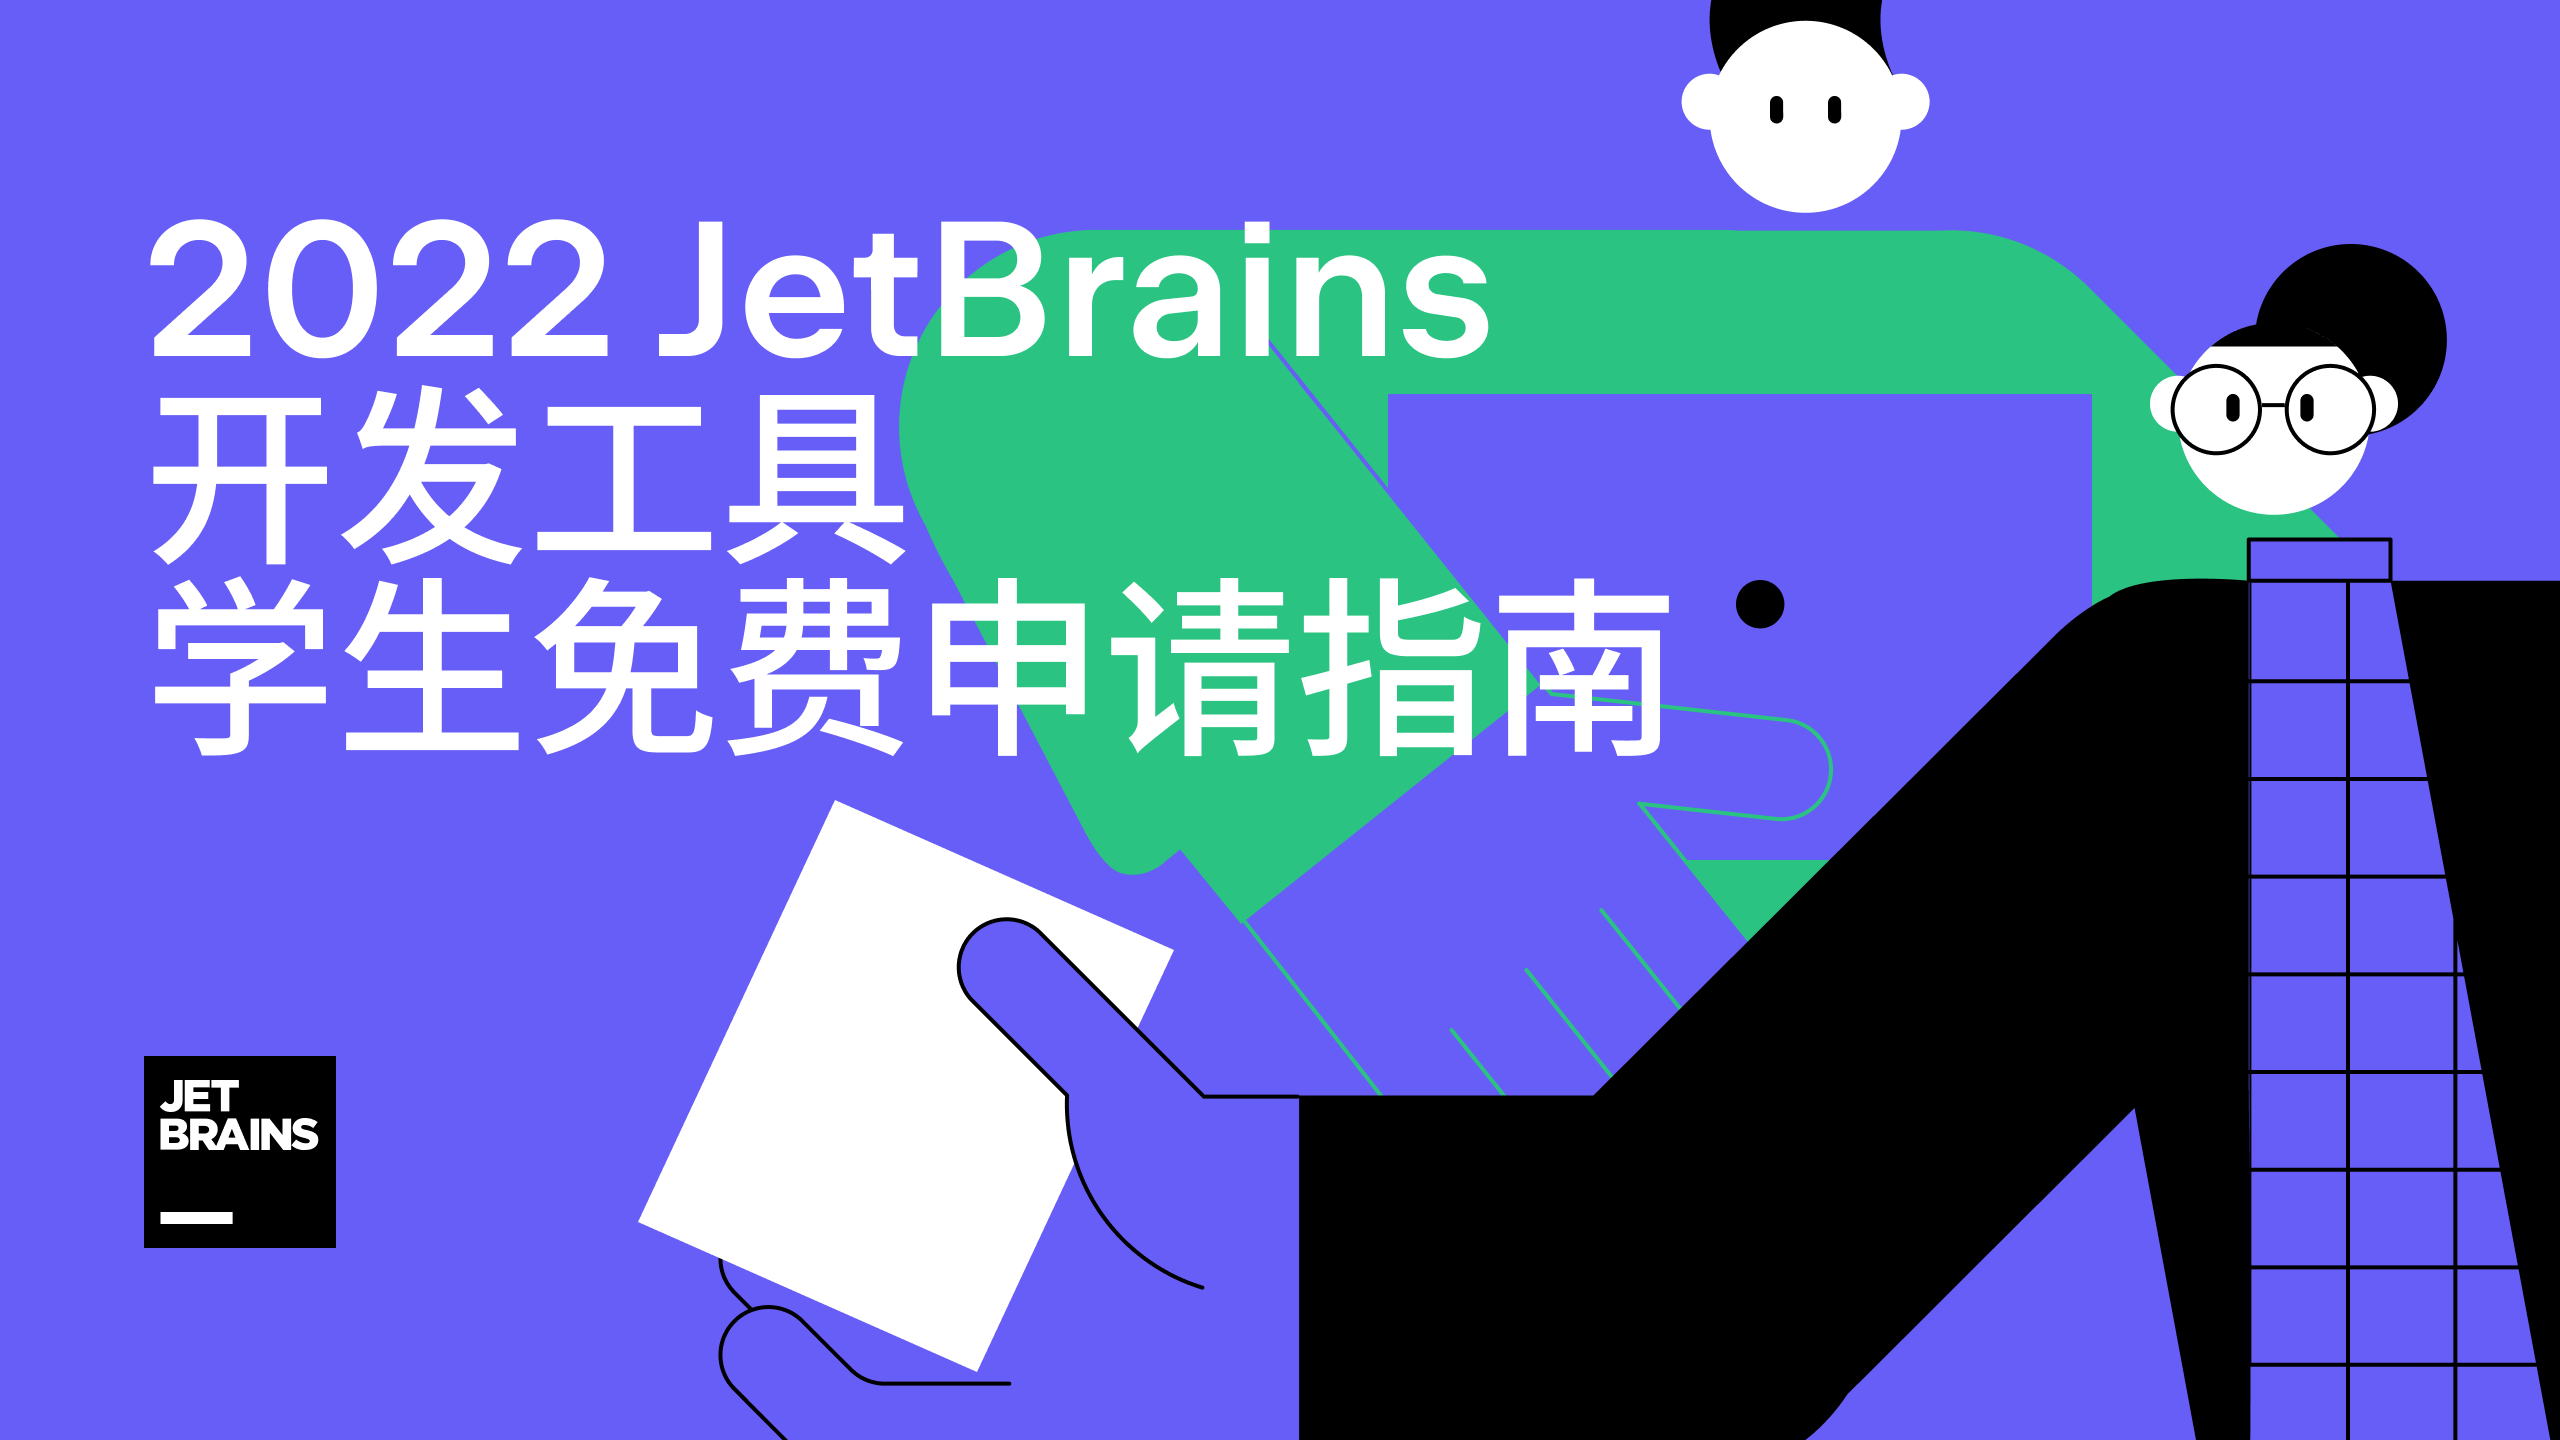 download jetbrains resharper visual studio 2022